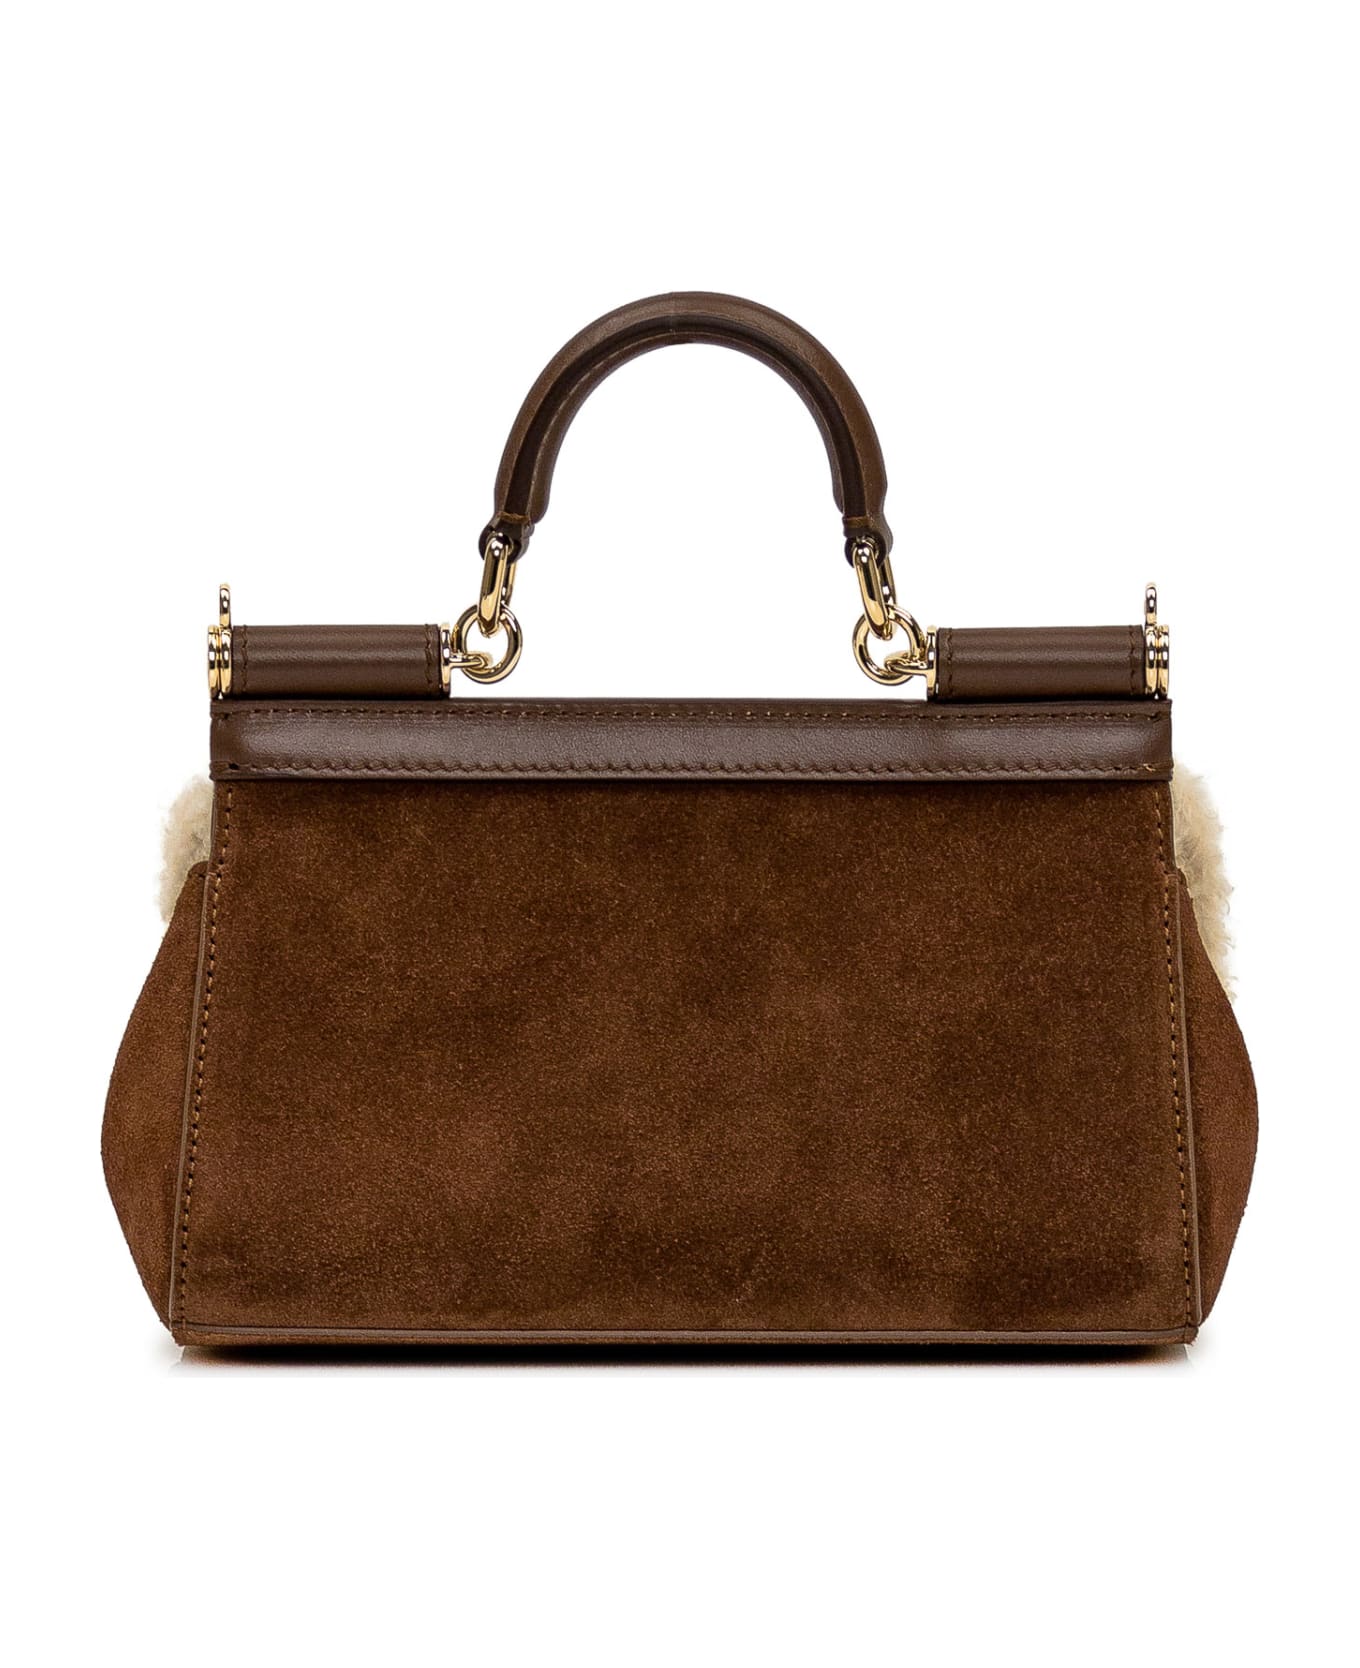 Dolce & Gabbana Sicily Handbag - brown